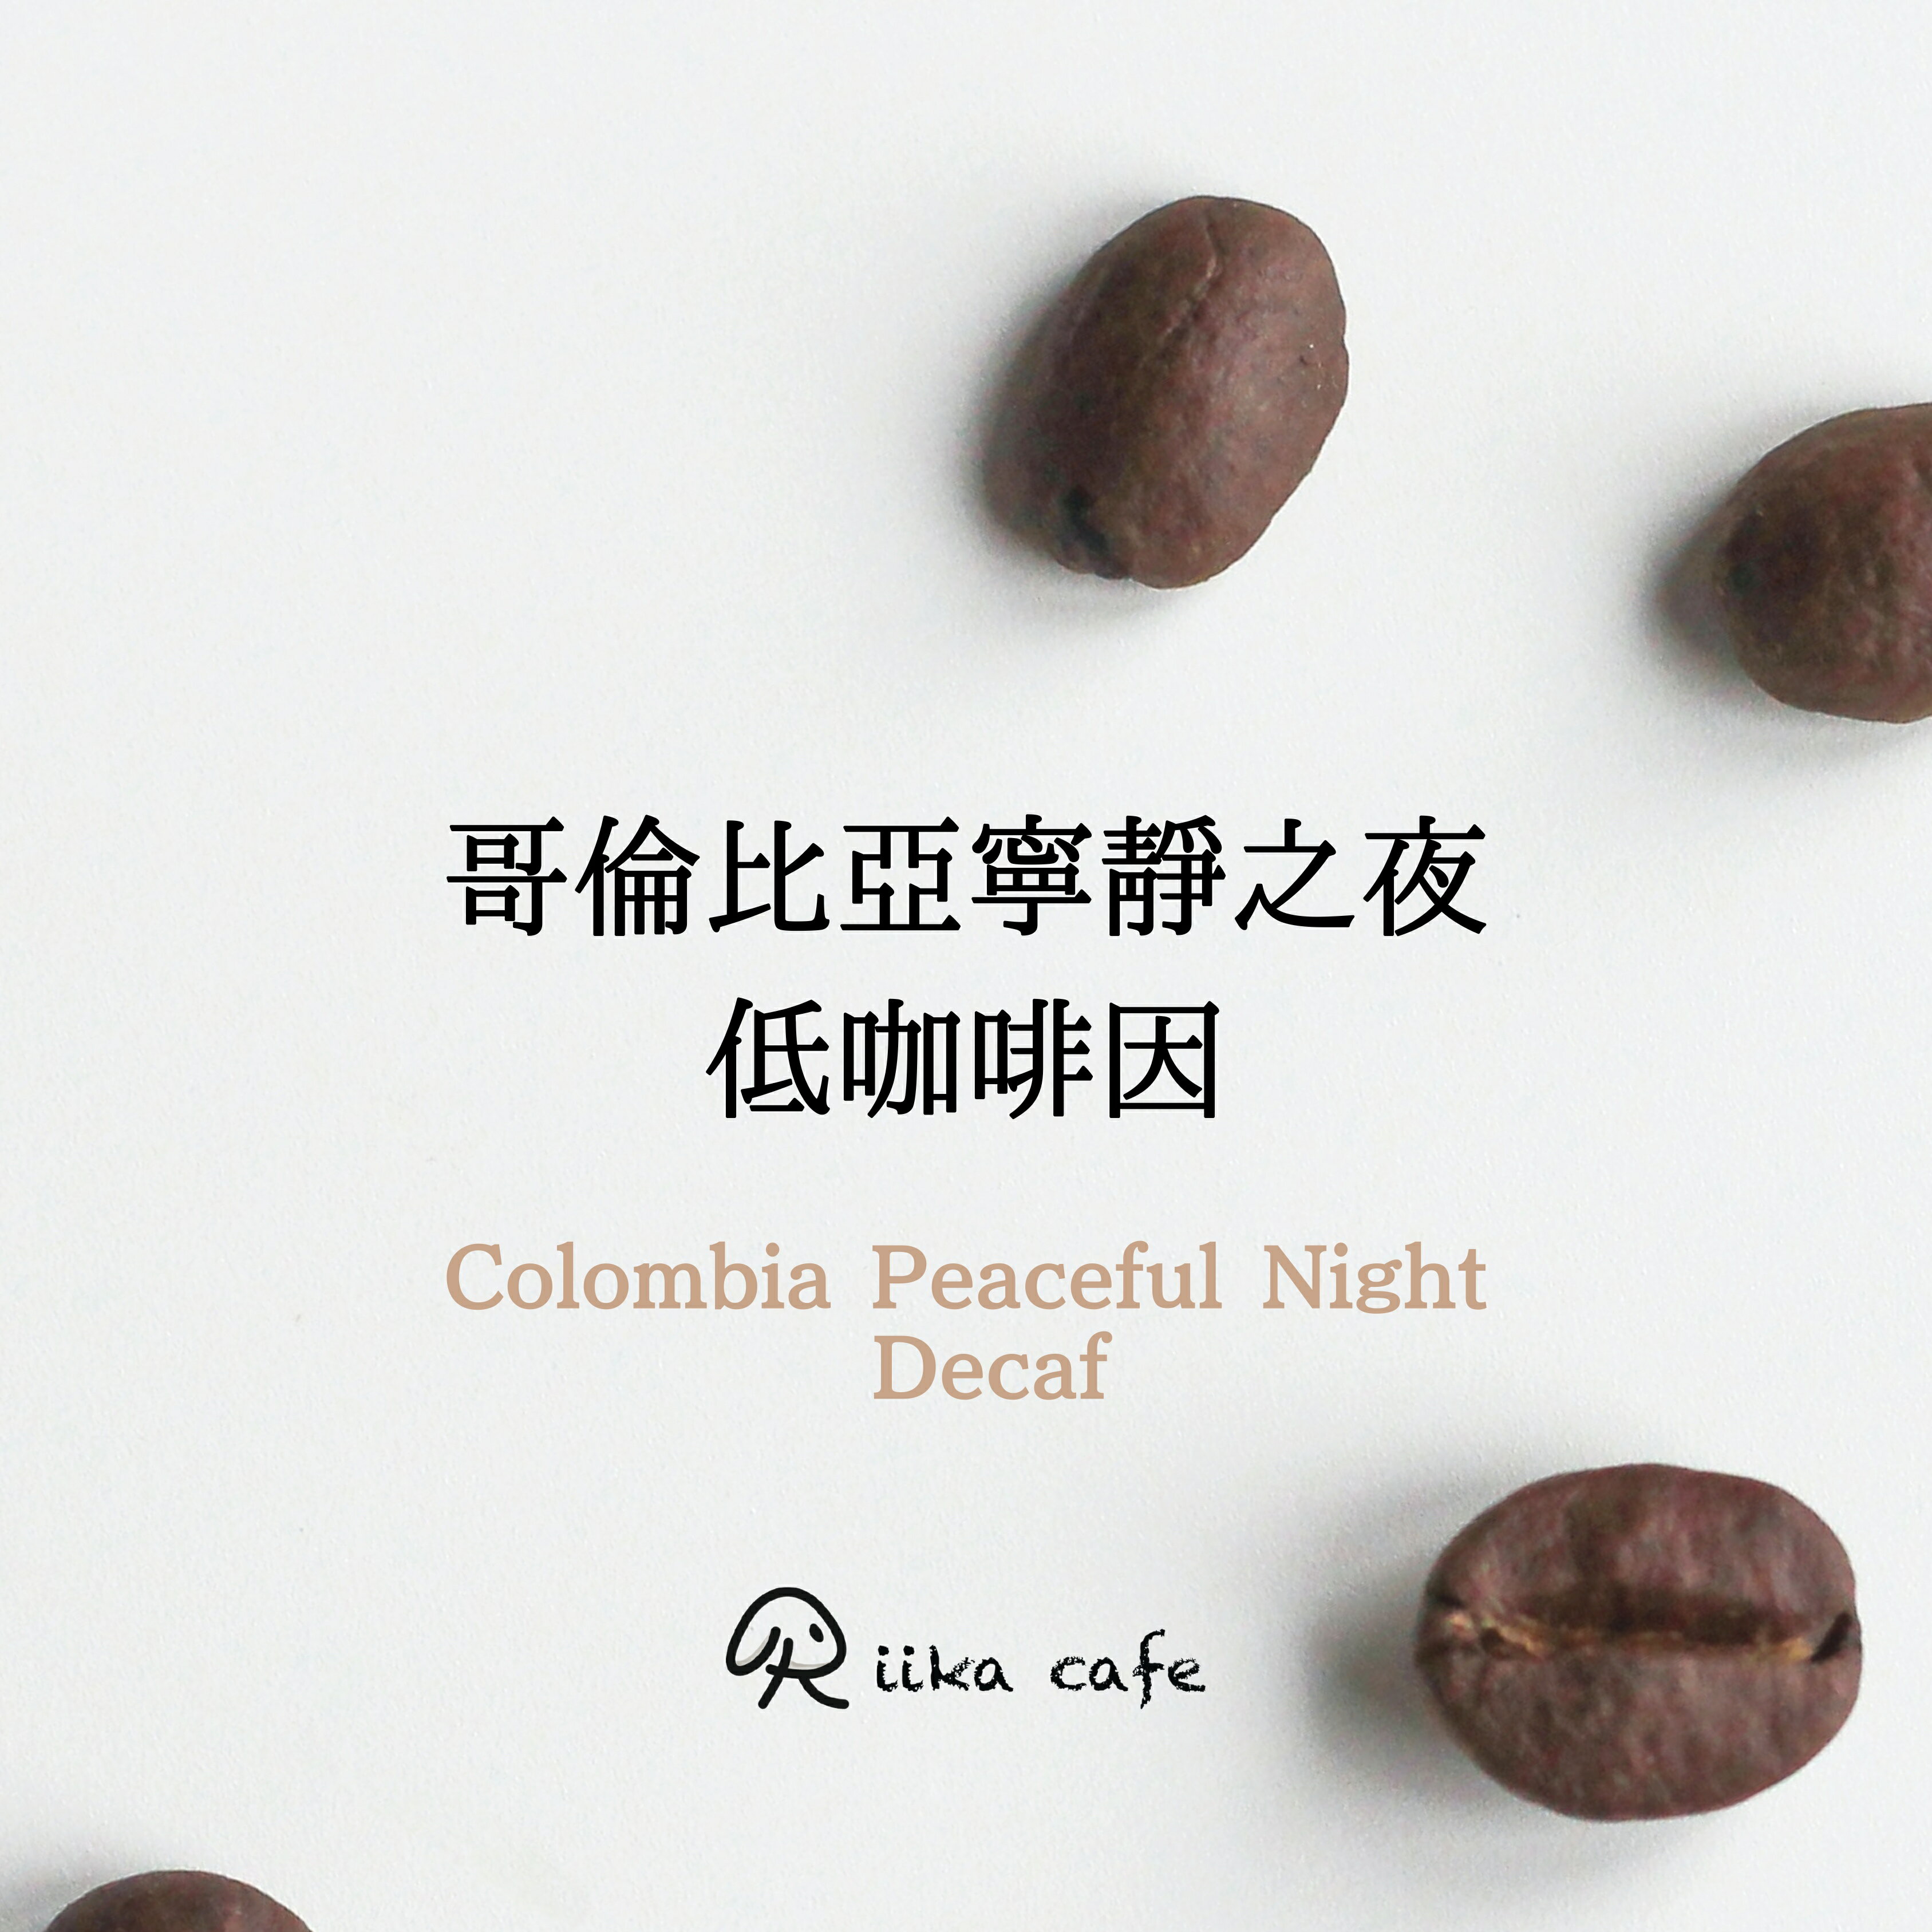 冠軍豆基底 低咖啡因「哥倫比亞寧靜之夜」盒裝濾掛咖啡 中深烘焙 Riika cafe